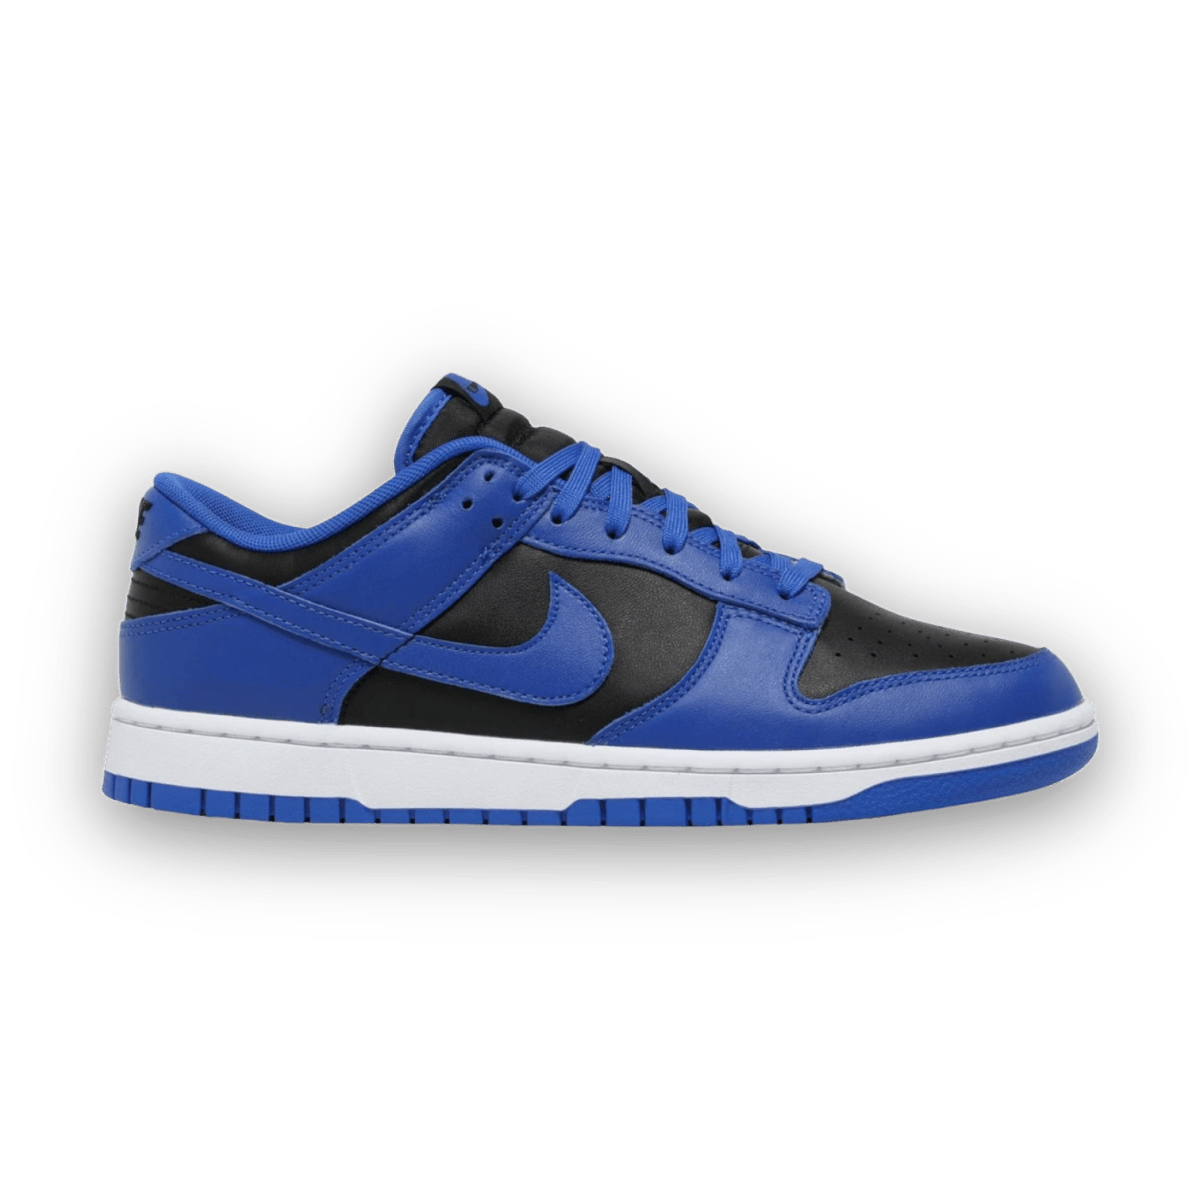 Dunk Low 'Hyper Cobalt' - Grade School - Low Sneaker - Jawns on Fire Sneakers & Streetwear